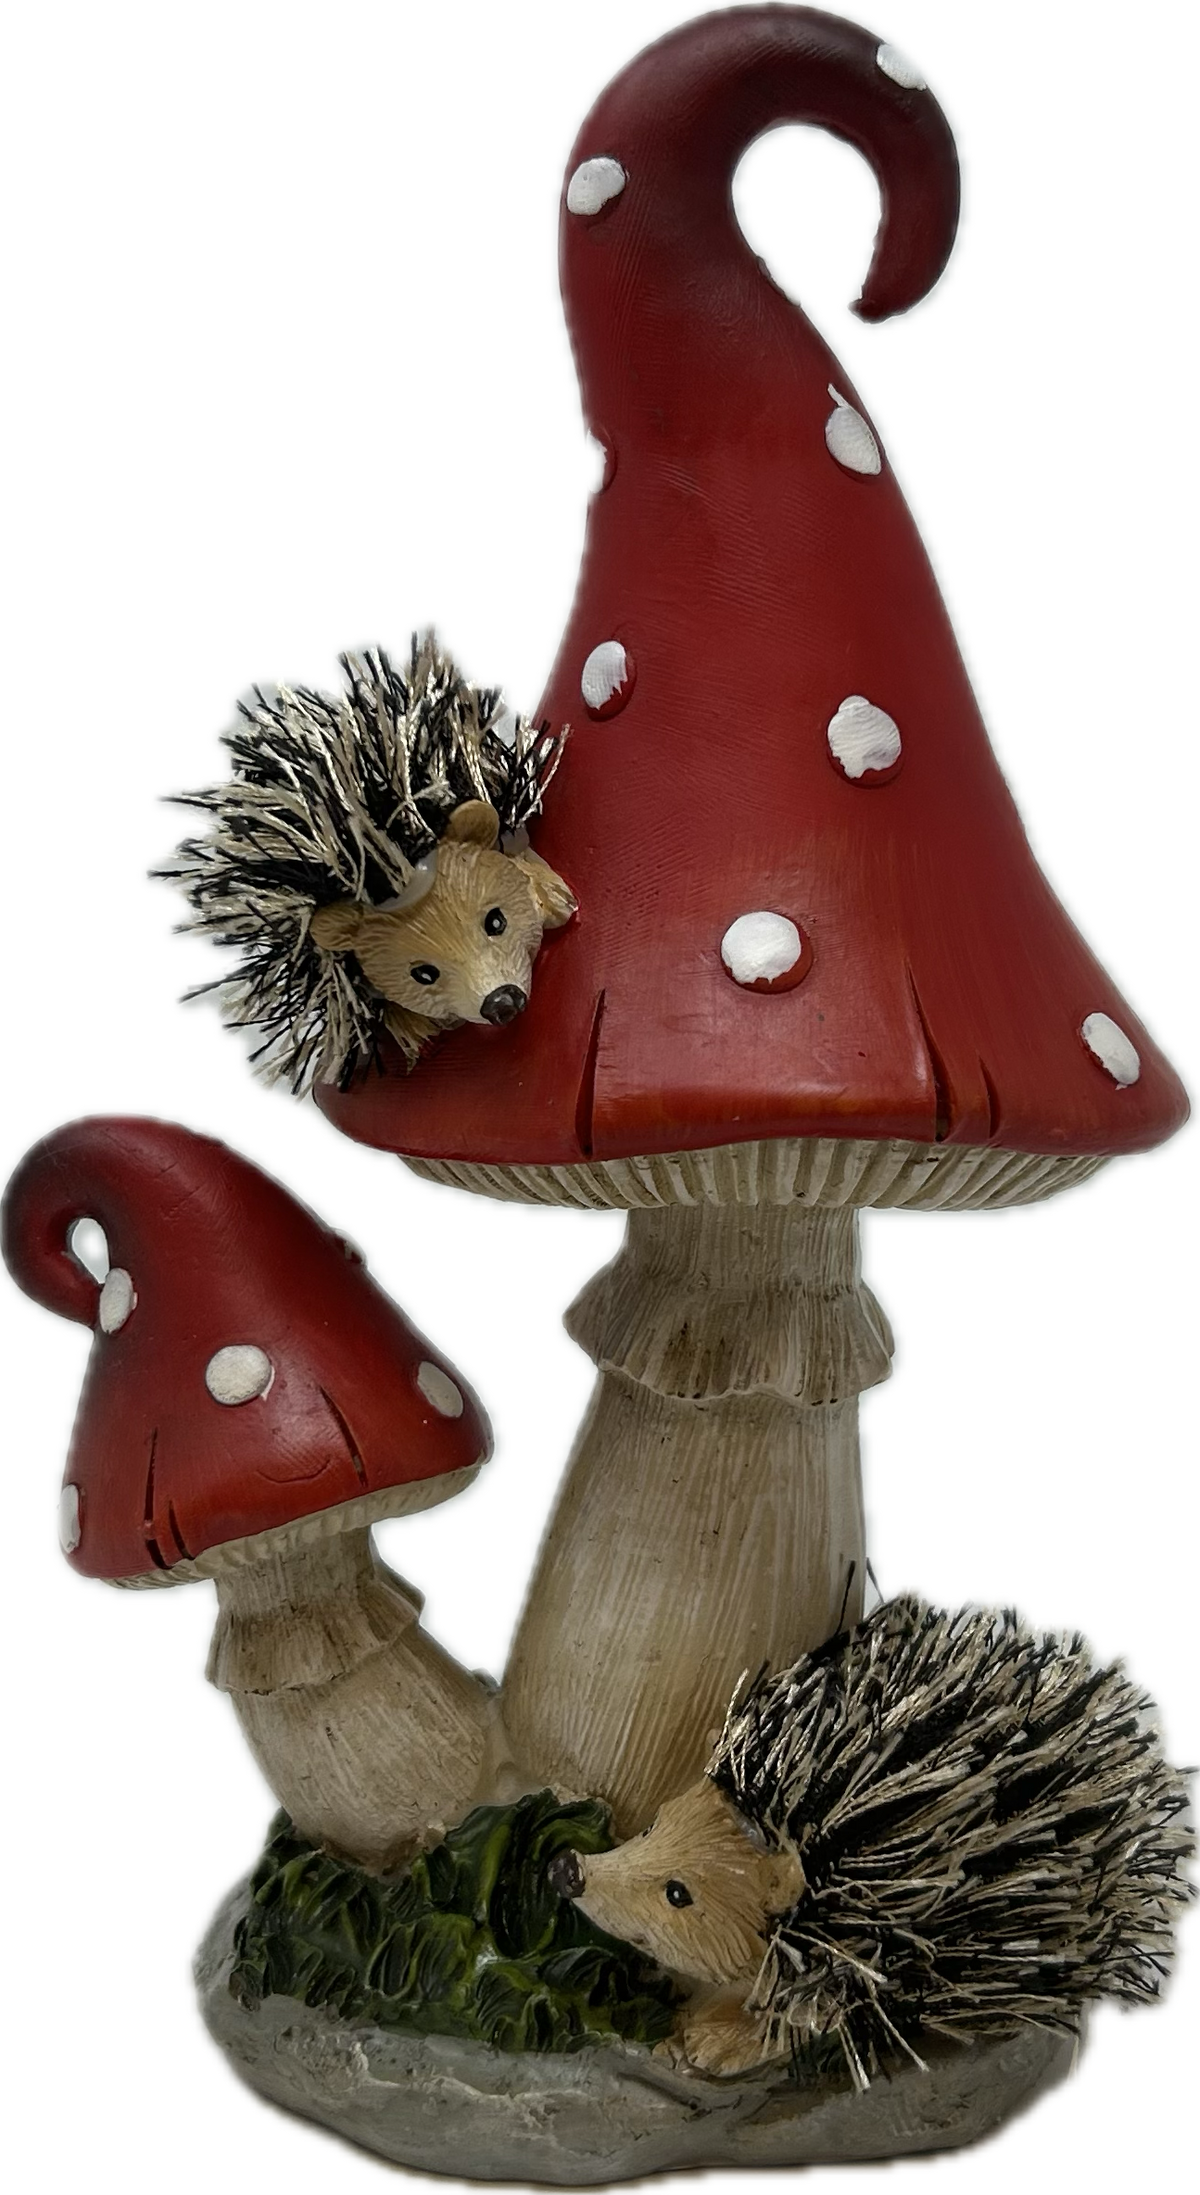 Resin Hedgehog w/ Mushroom Figurine